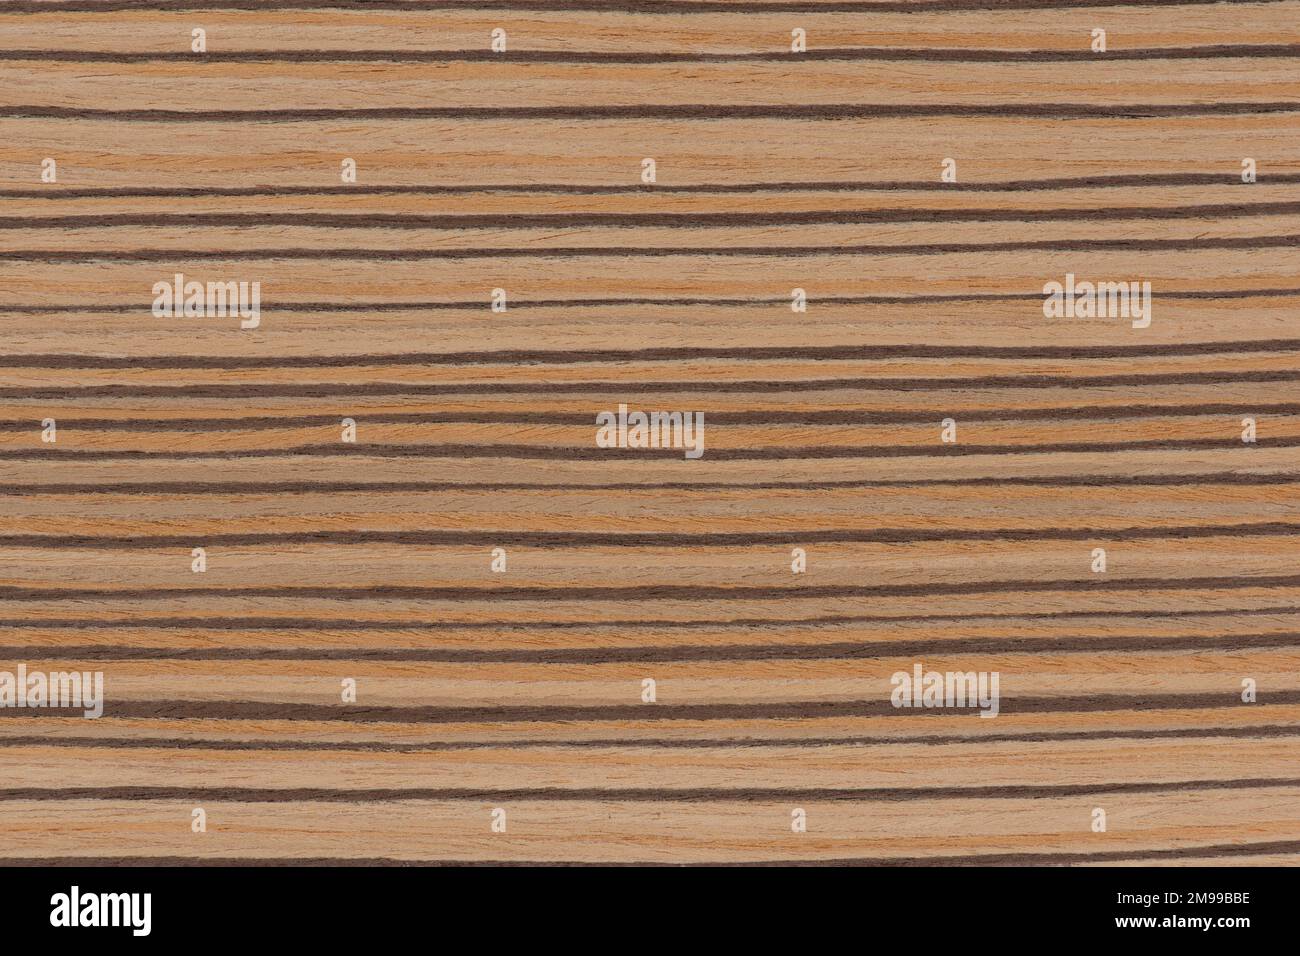 Zebrabaum. Konsistenz von braunem Holz mit horizontalen schwarzen Streifen. Afrikanische Zebrano-Holztextur auf Makro. Foto in sehr hoher Auflösung. Stockfoto